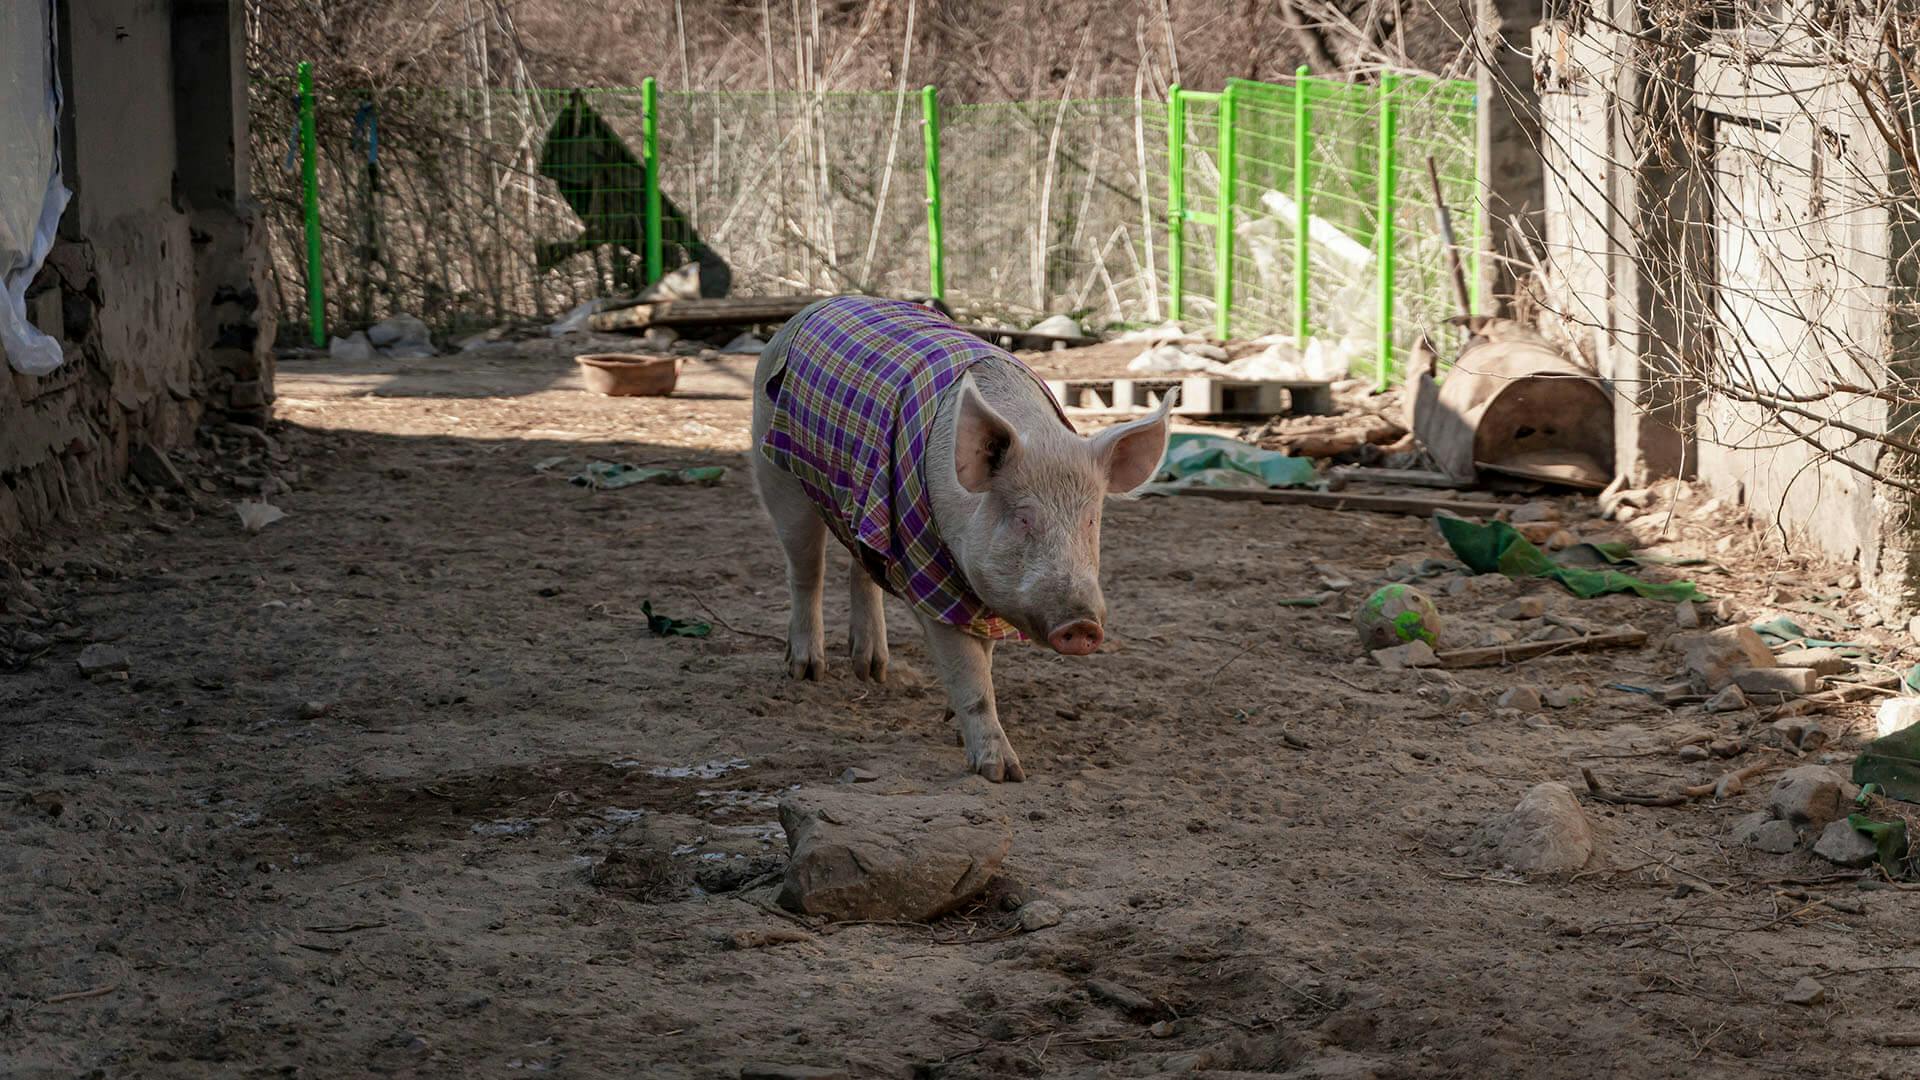 흙바닥에서 체크무늬 옷을 입은 돼지가 서성이고 있다. 이 돼지의 이름은 조나단 리빙스턴으로, '나단이'라고 불린다.